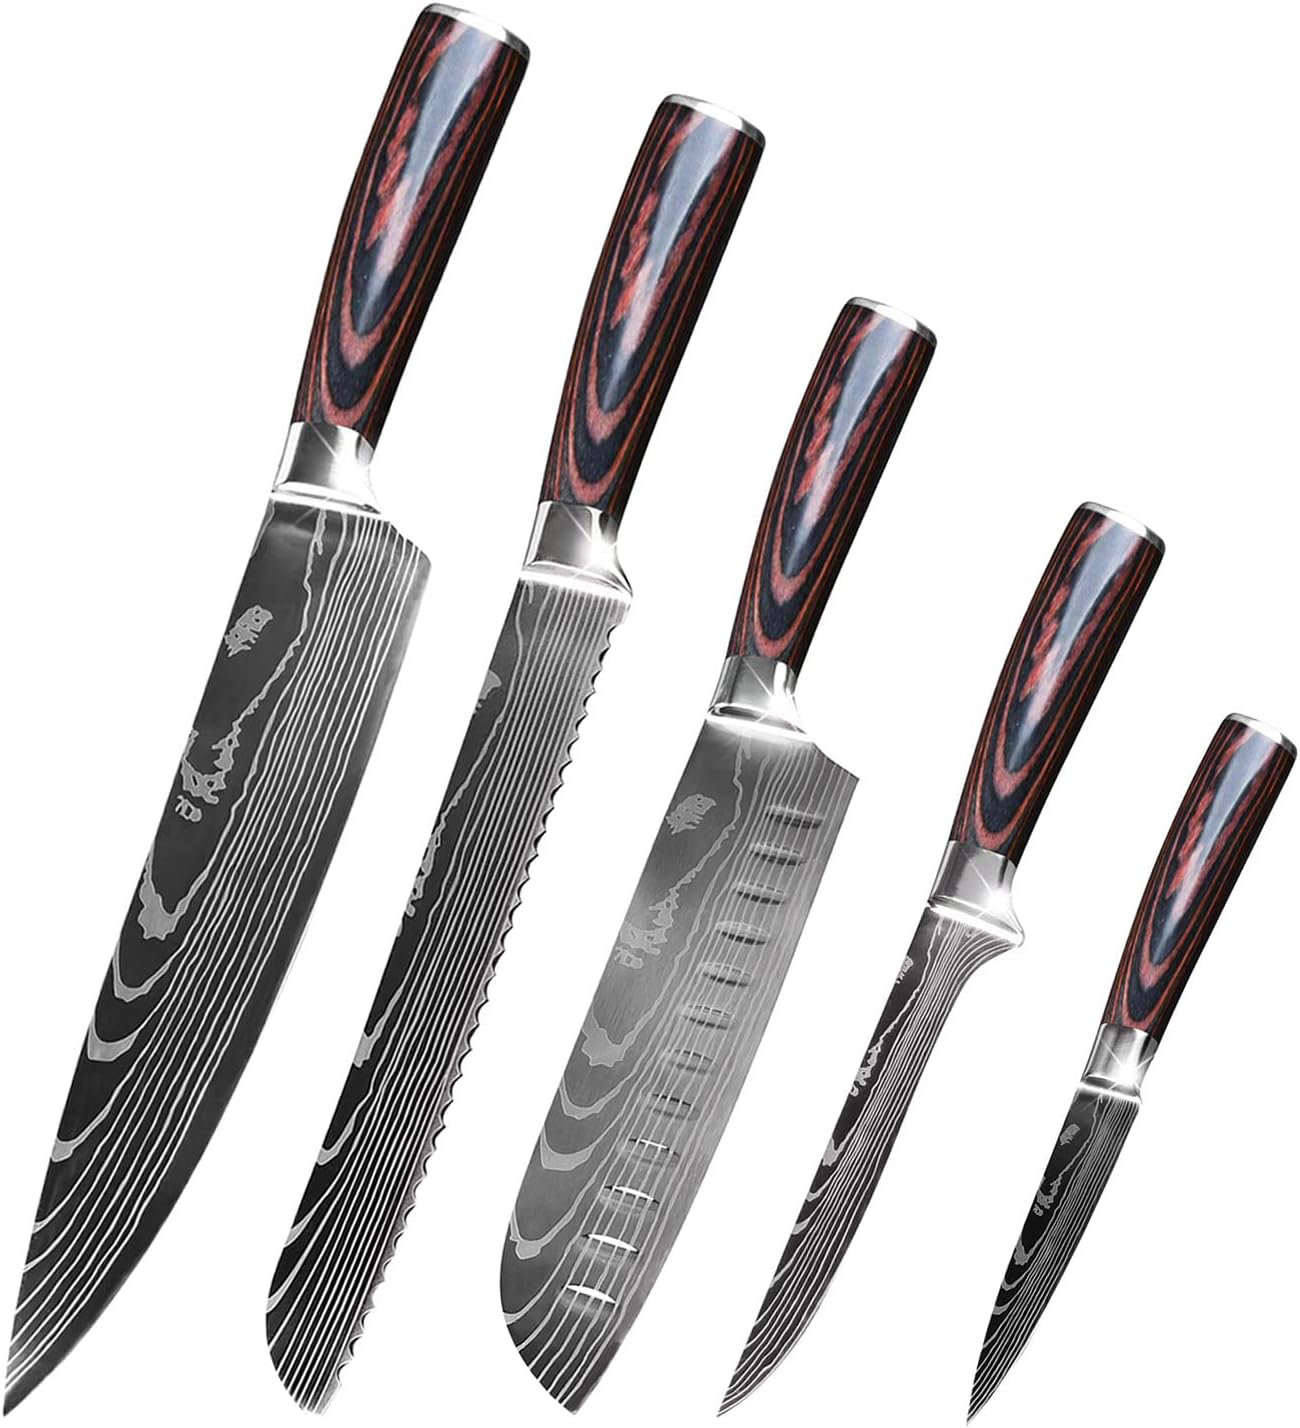 https://assets.wfcdn.com/im/40994087/compr-r85/2511/251124491/qxxsj-5-piece-stainless-steel-assorted-knife-set.jpg